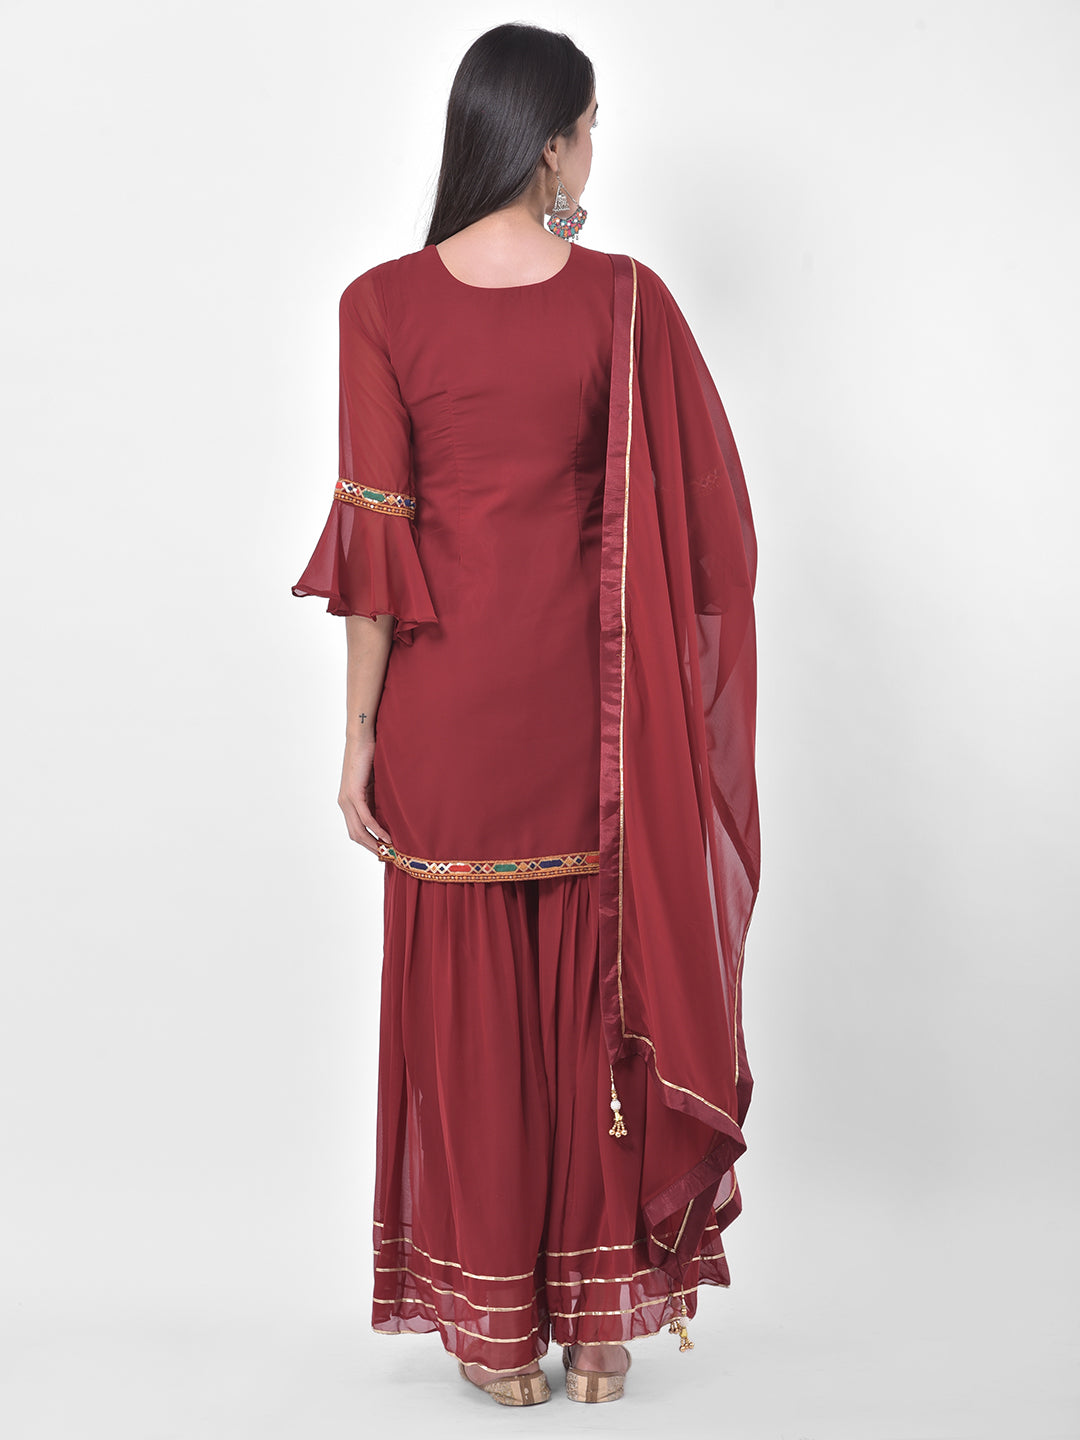 Neeru'S Maroon Color Georgette Fabric Suit-Gharara